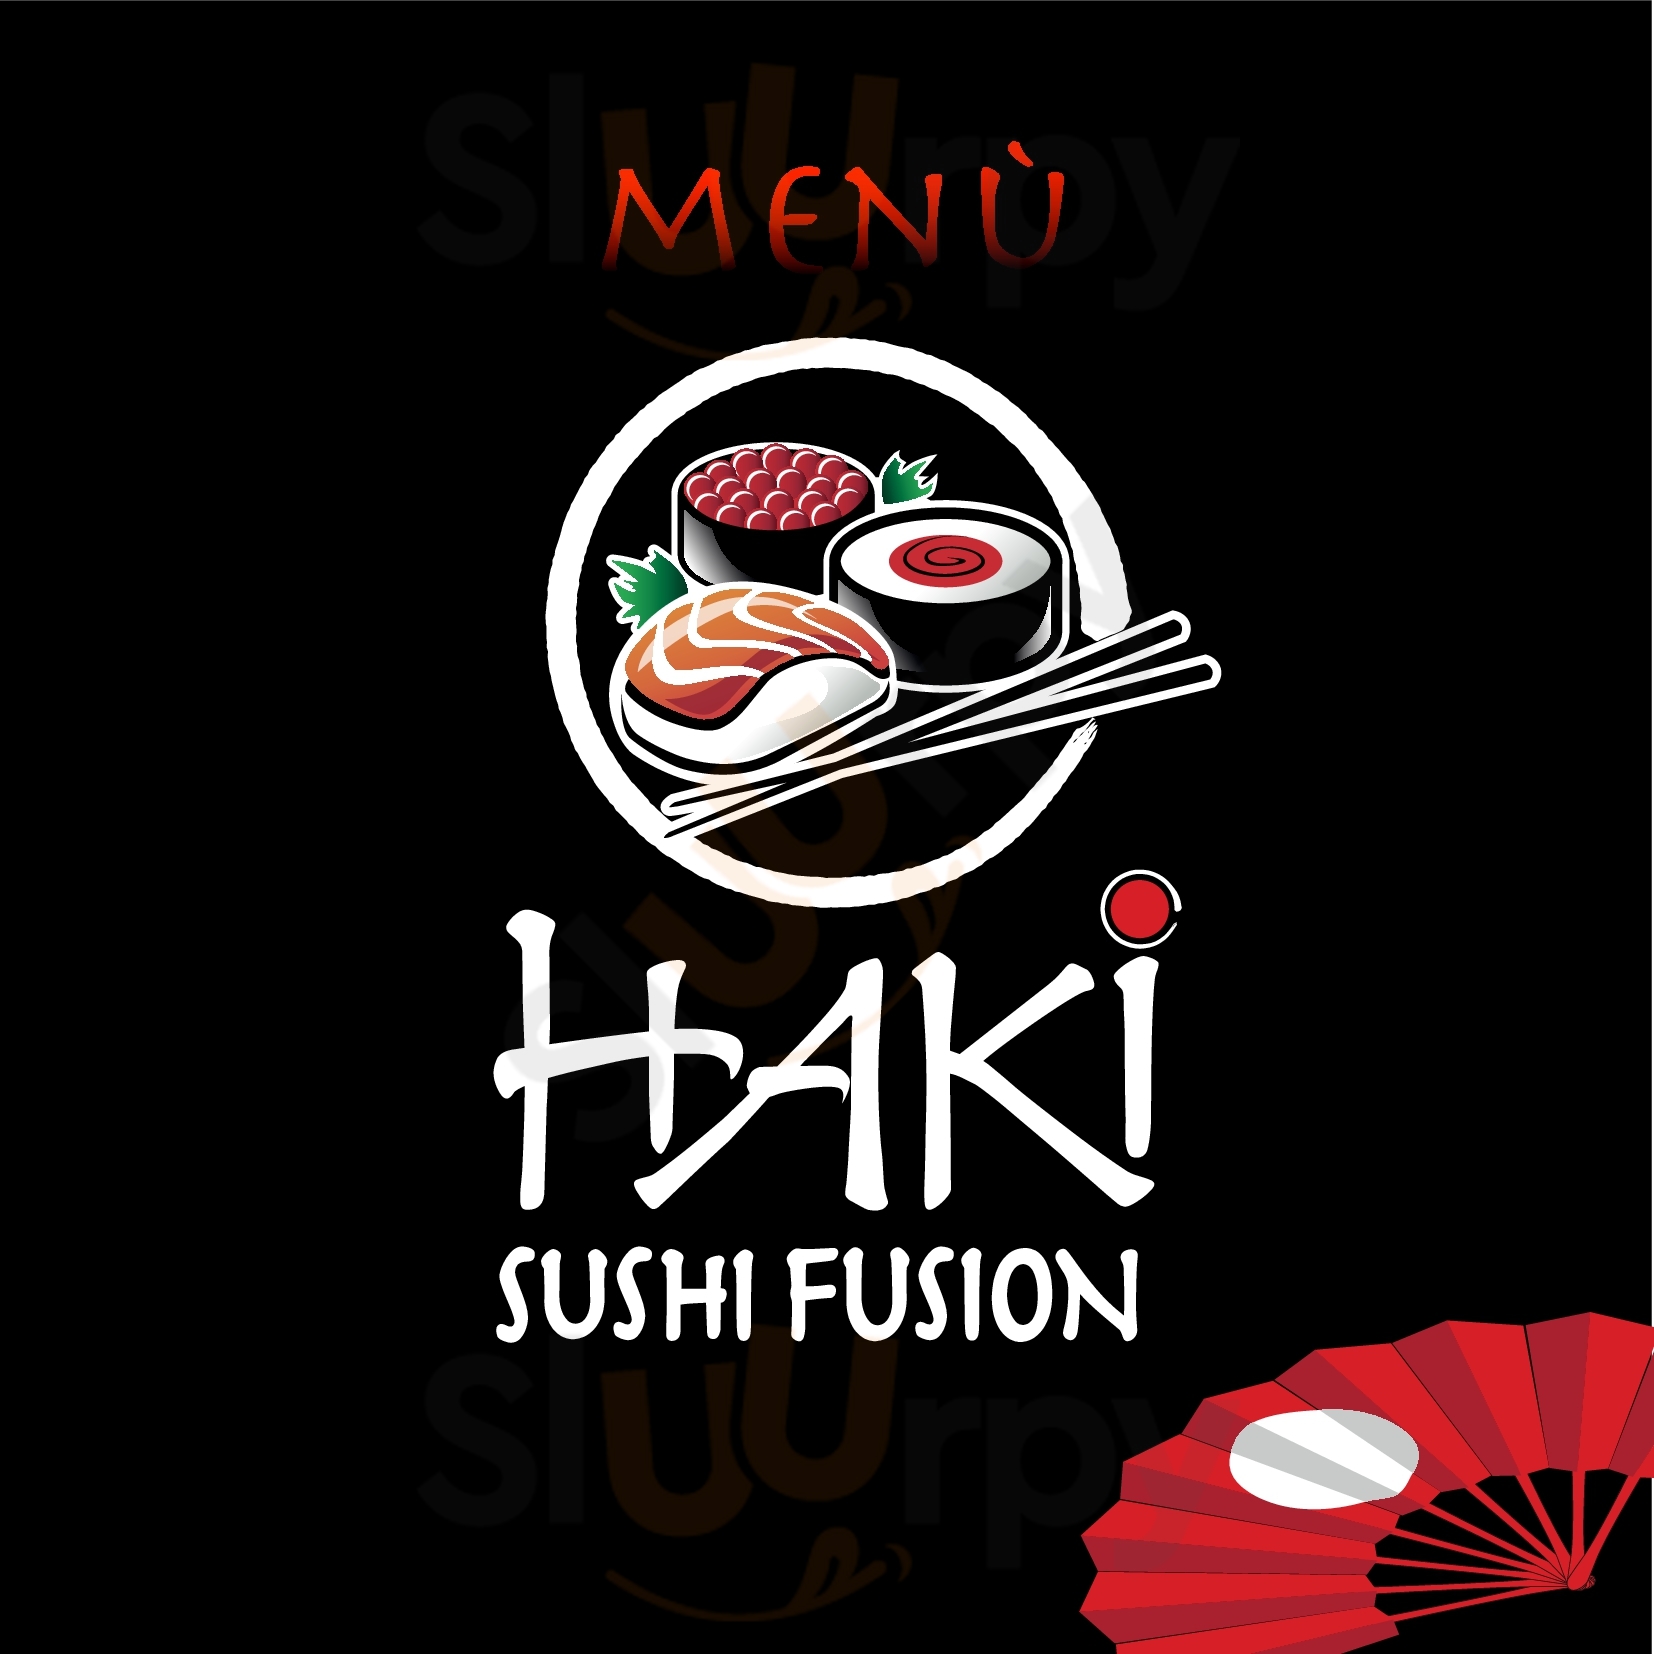 Haki Sushi Fusion Catania menù 1 pagina